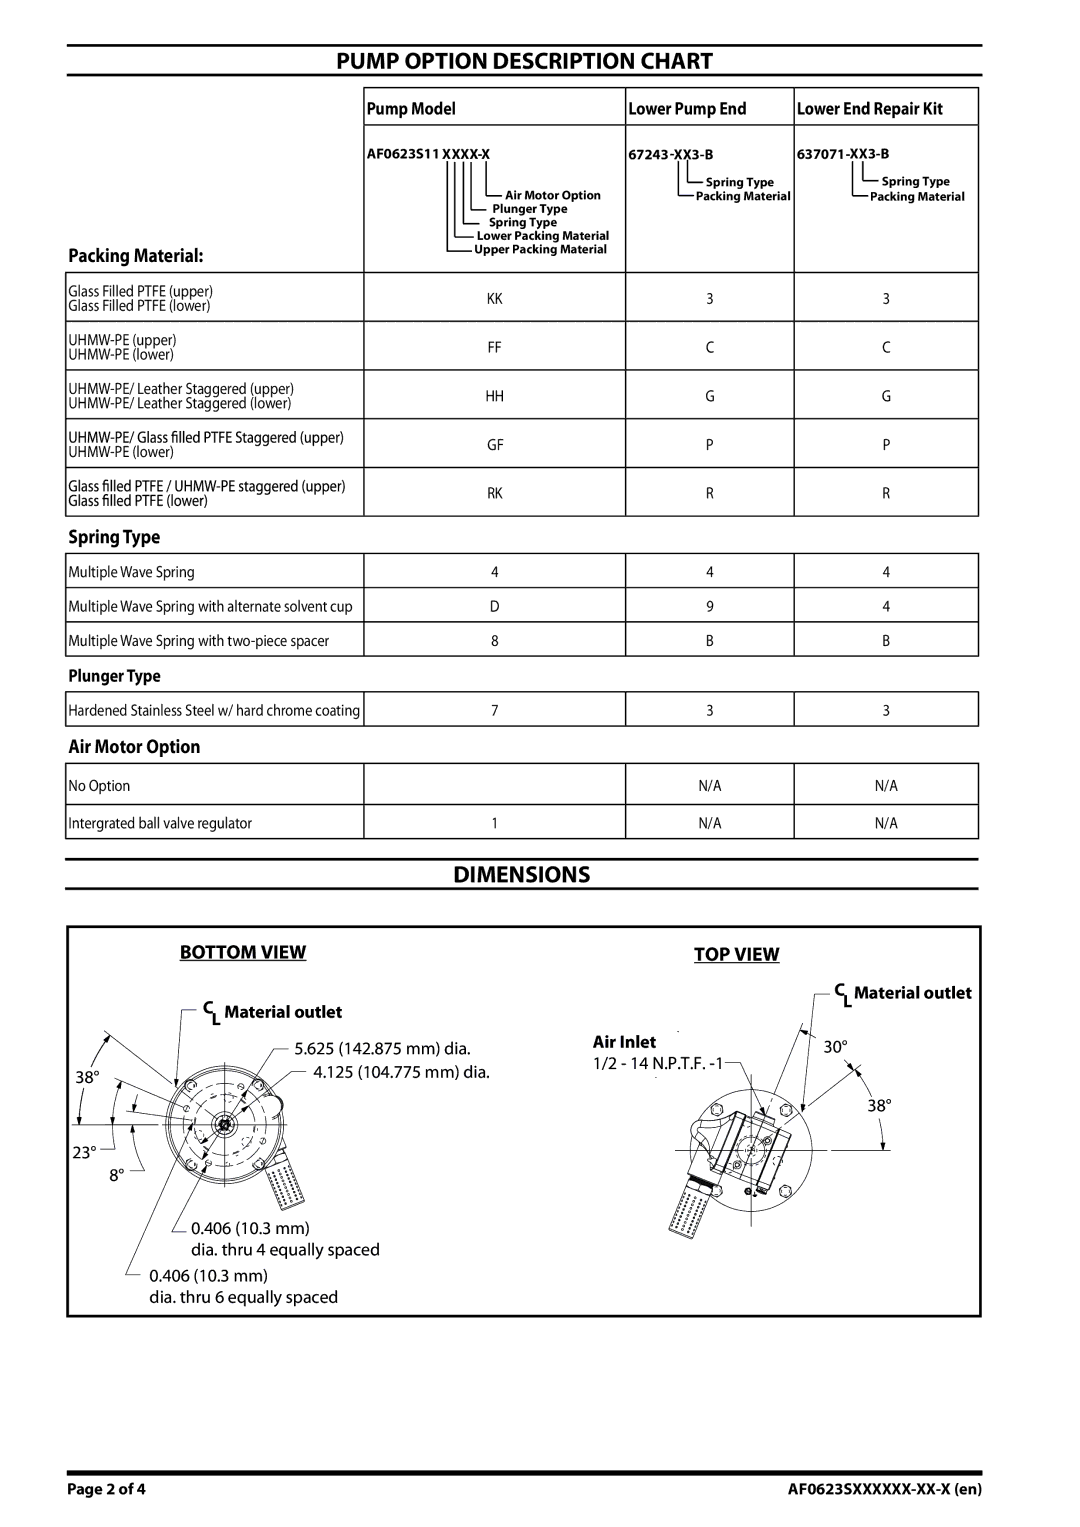 Ingersoll-Rand AF0623SXXXXXX-XX-X specifications Pump Option Description Chart, Dimensions 